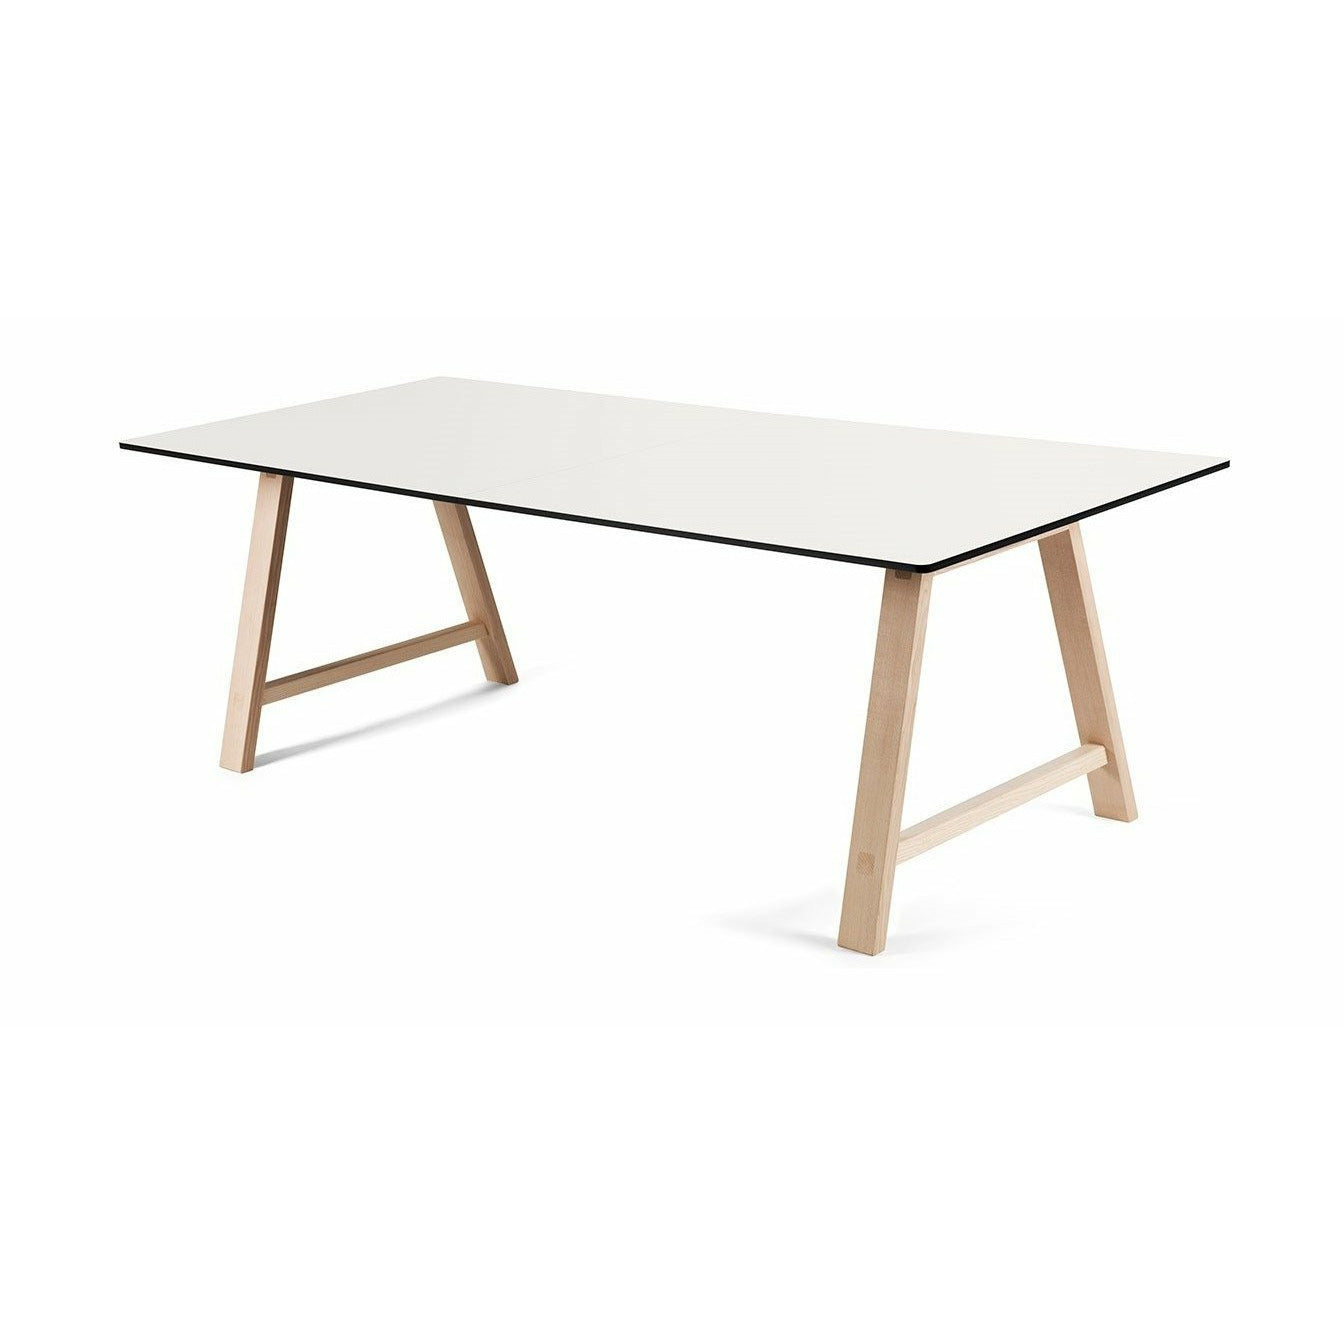 Table extensible des meubles Andersen T1, stratifié blanc, chêne savonned, 180 cm